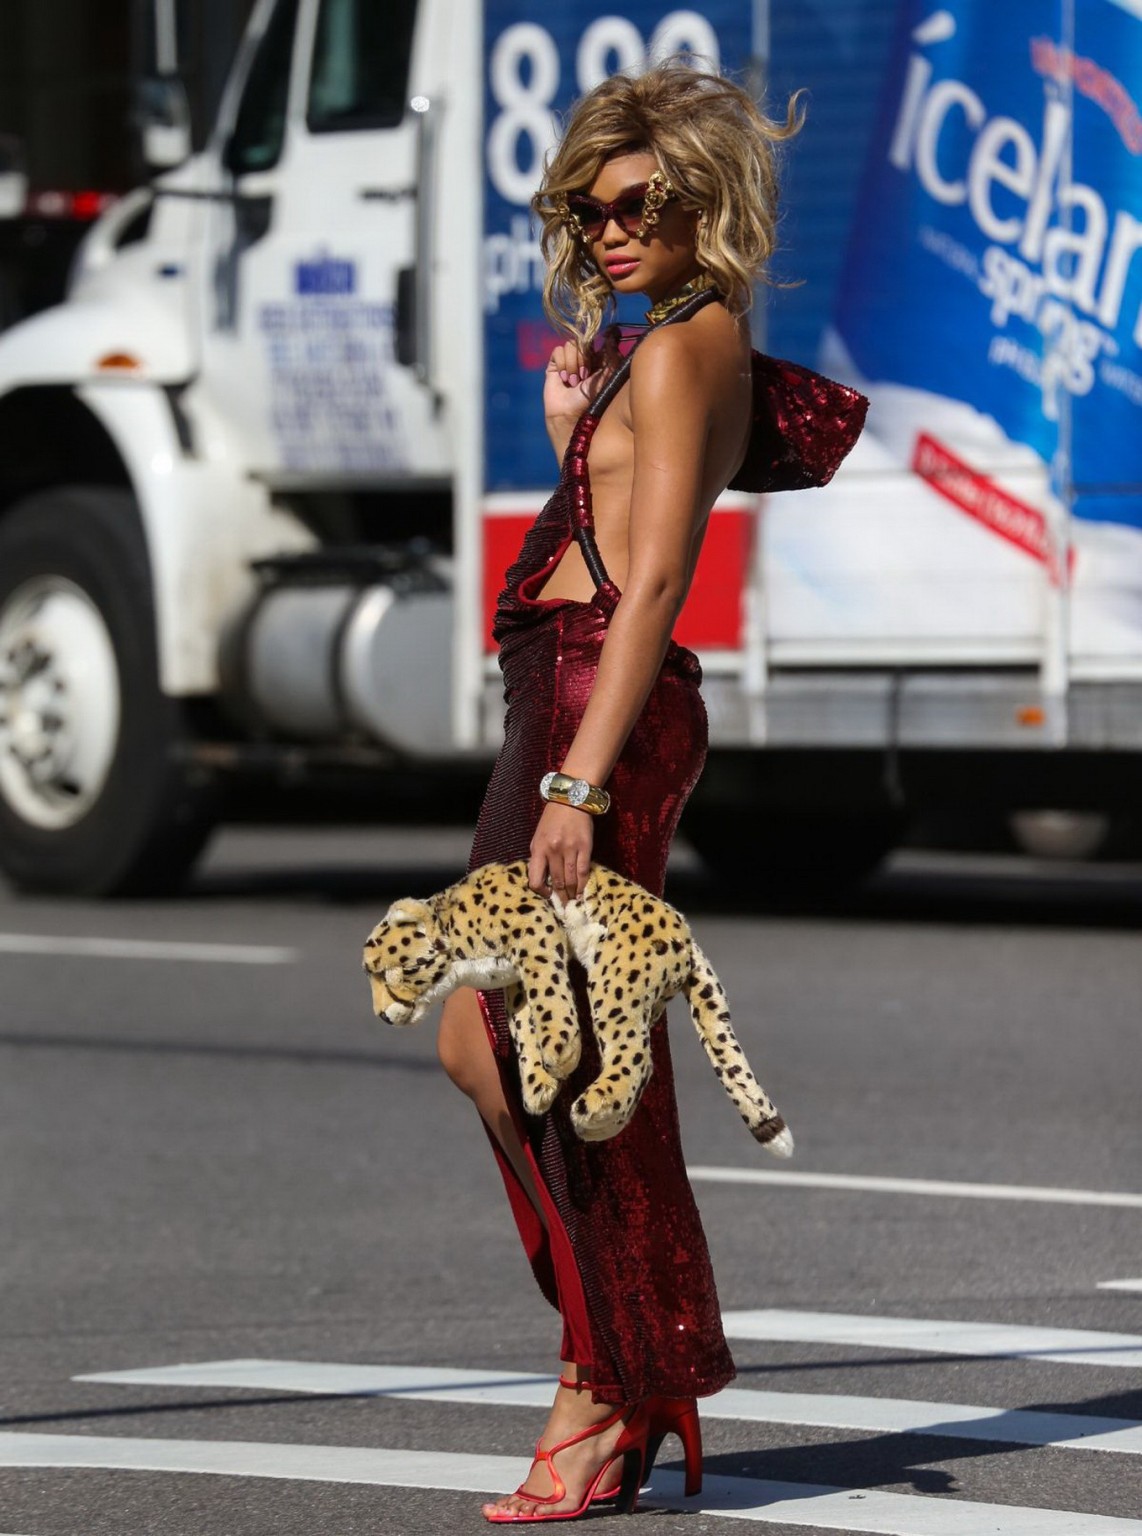 Chanel iman montre ses seins et ses jambes lors d'une séance de photos dans la rue à New York.
 #75195001